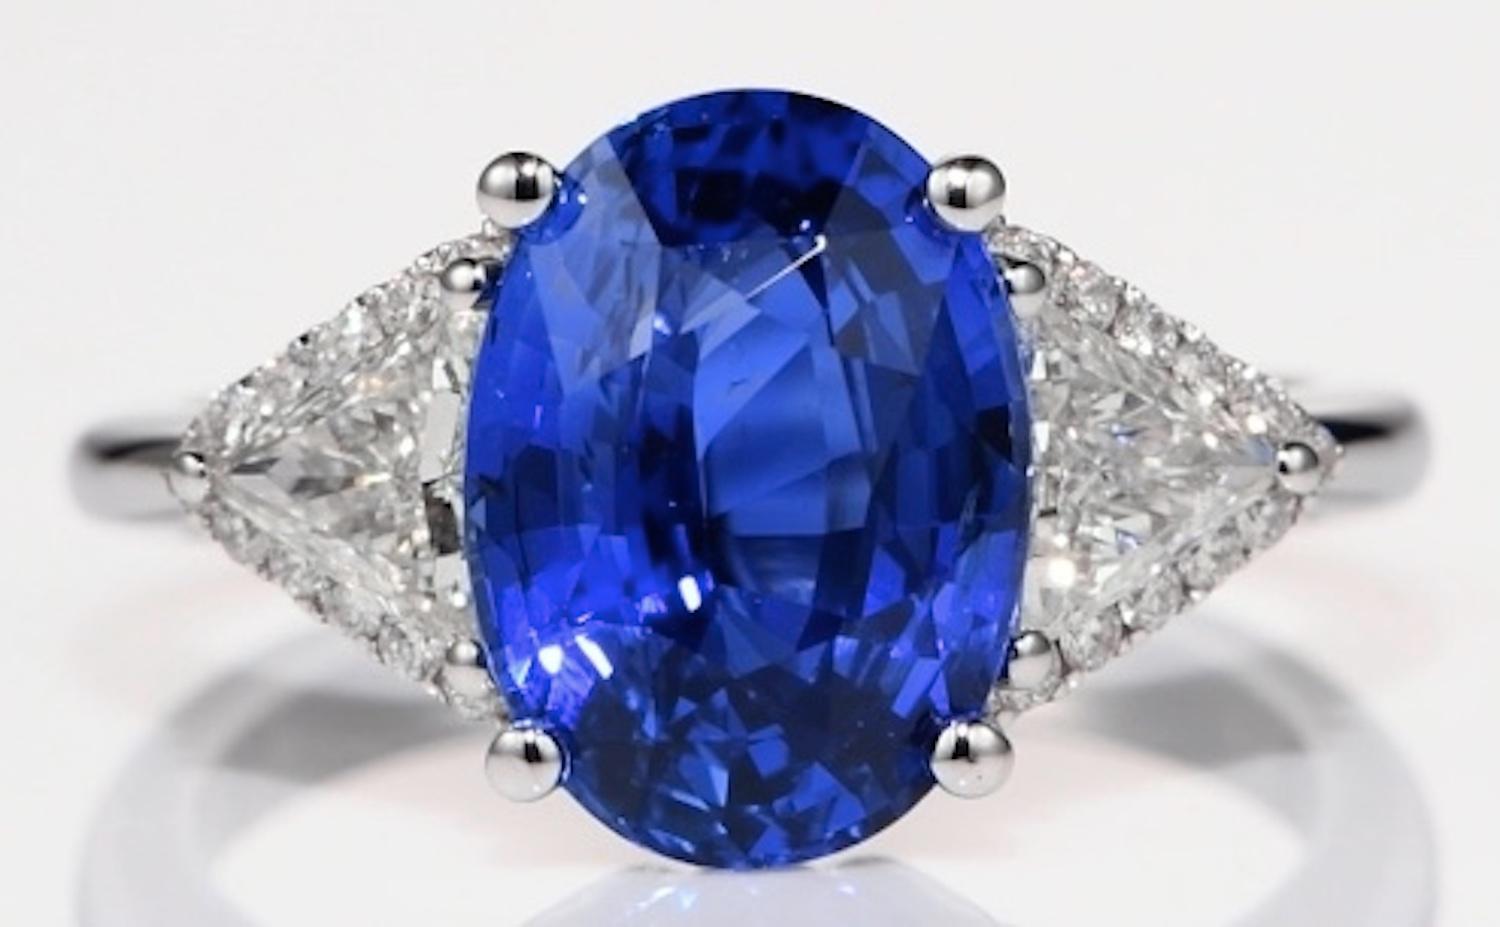 Dieser wunderschöne, elegante und zeitlose Ring ist mit einem unglaublichen blauen Ceylon-Saphir im Ovalschliff mit einem Gewicht von 4,81 Karat besetzt, der auf beiden Seiten von zwei Diamanten mit einem Gesamtgewicht von 0,61 Karat flankiert wird.